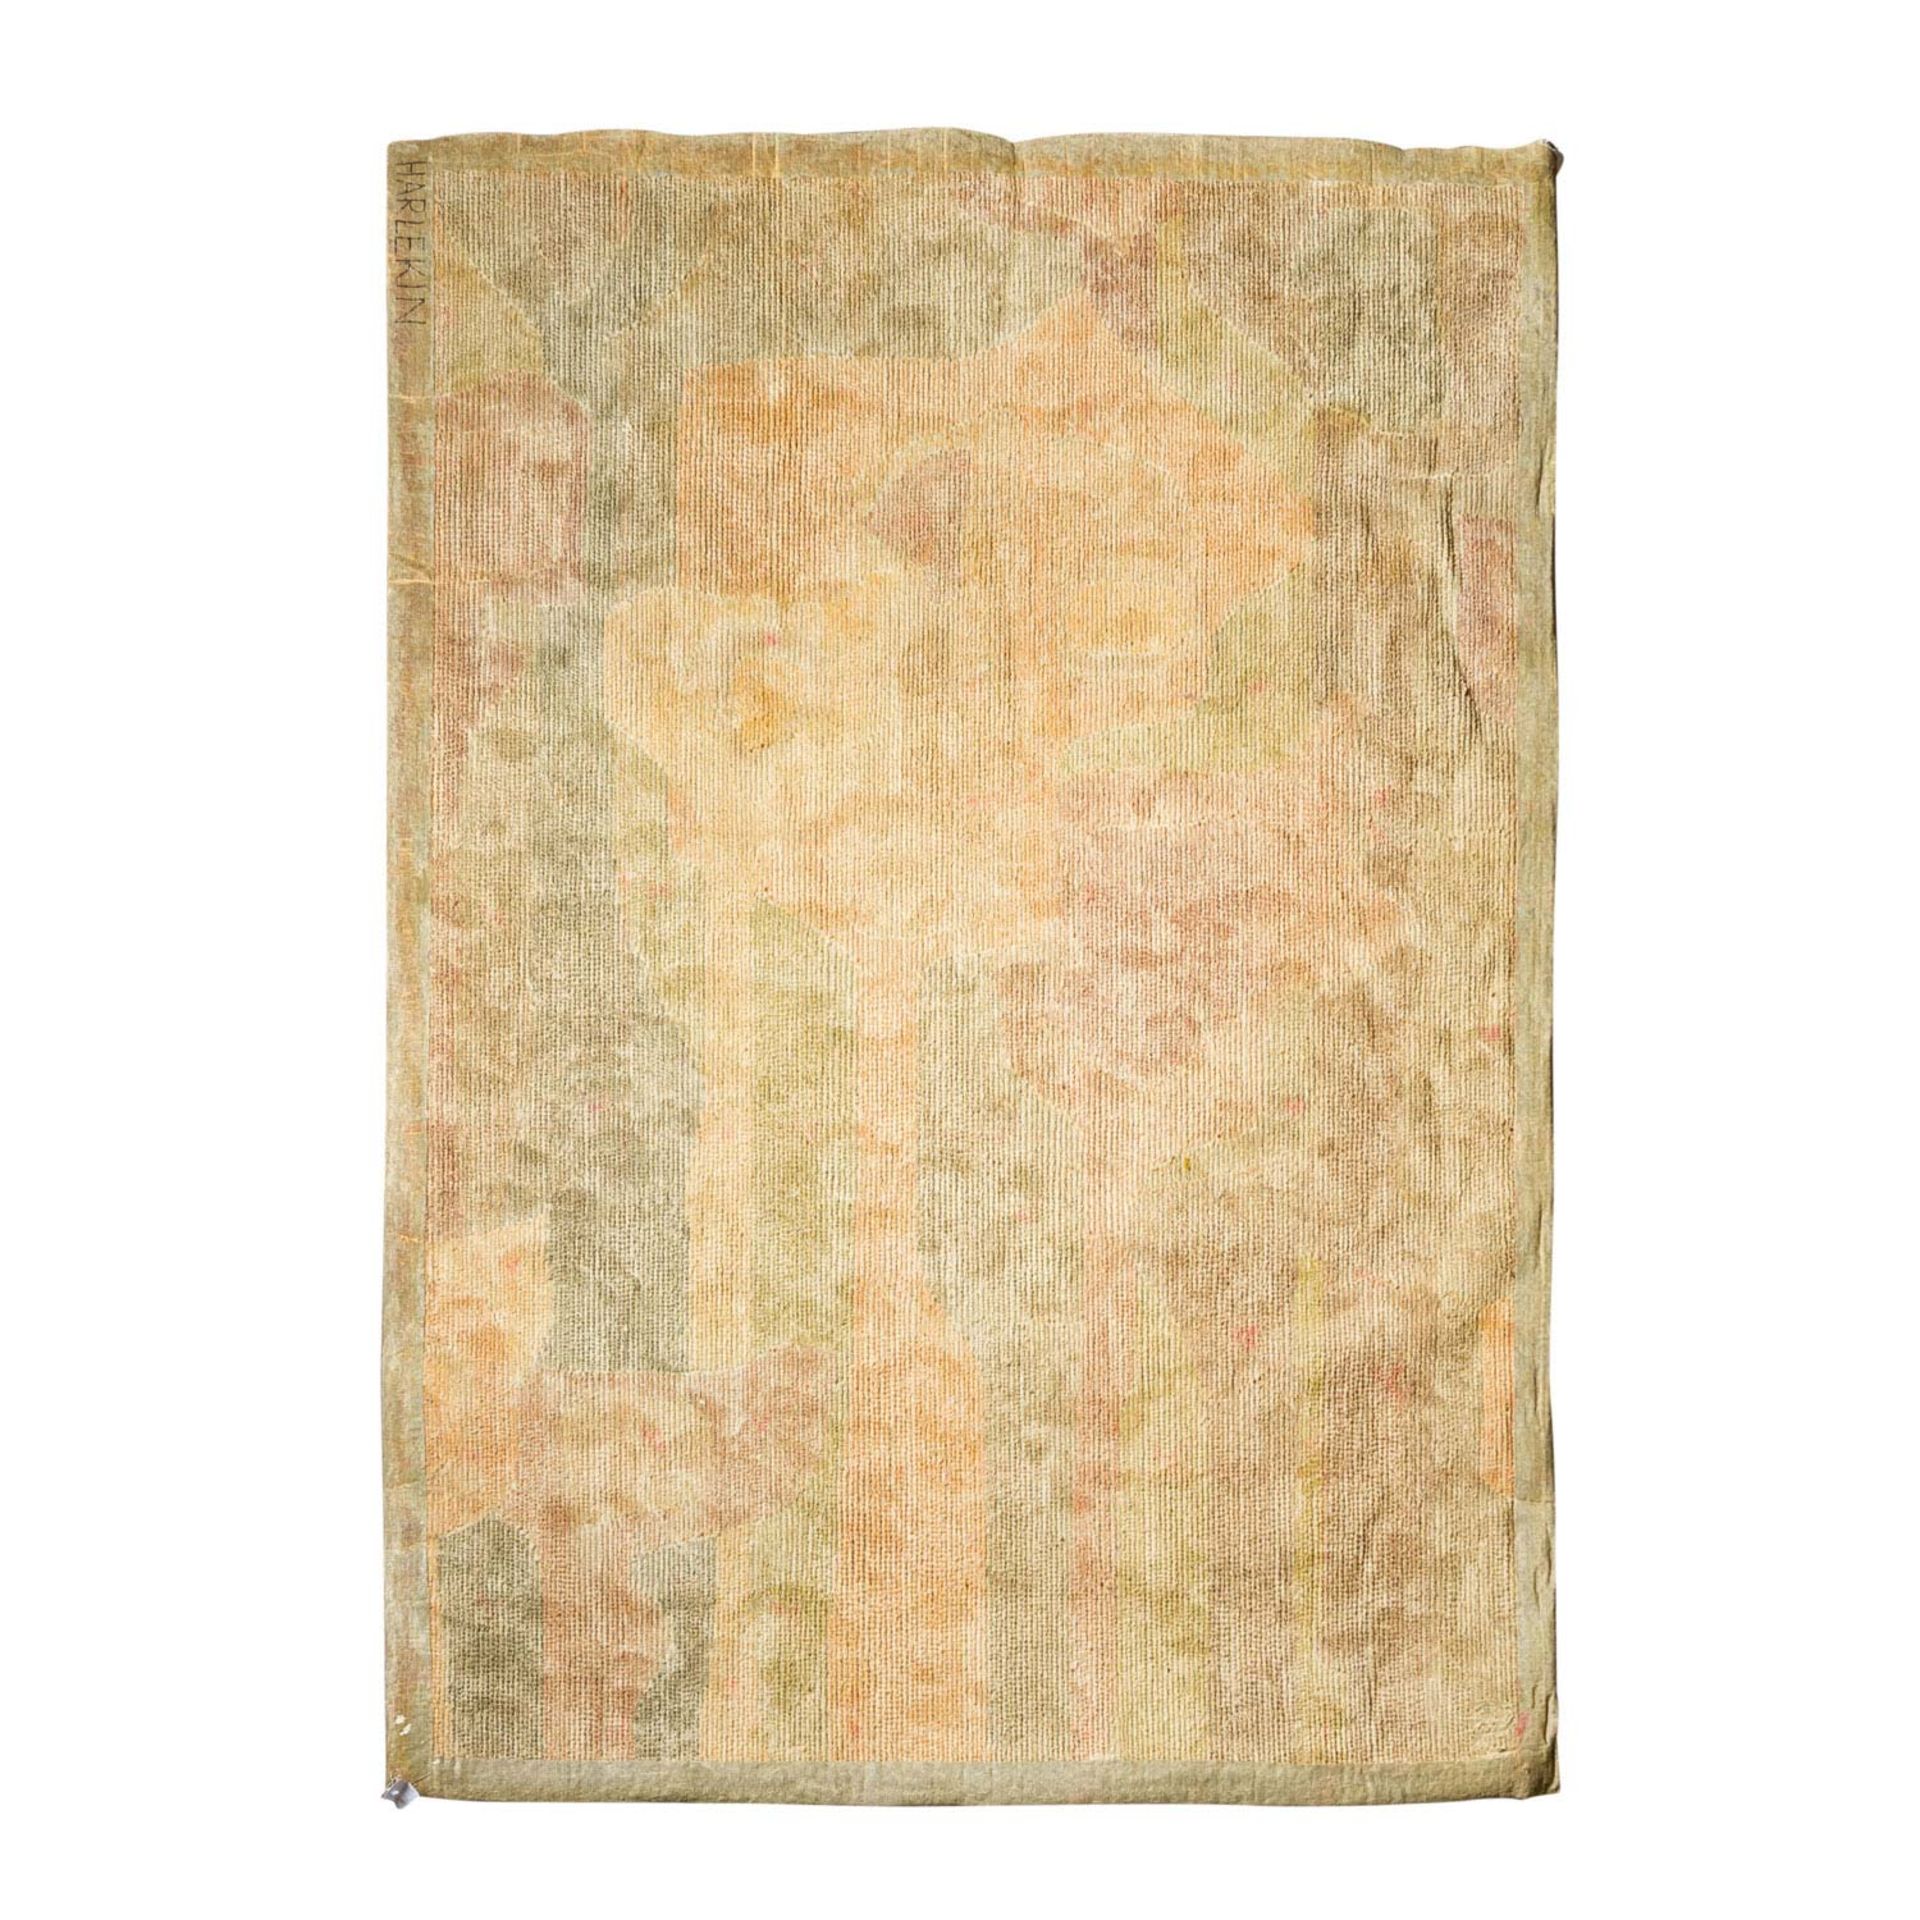 Design Teppich aus Wolle. 1970er Jahre, 170x243 cm.Klassisch Modernes Muster ineinandergreifender, - Bild 3 aus 4